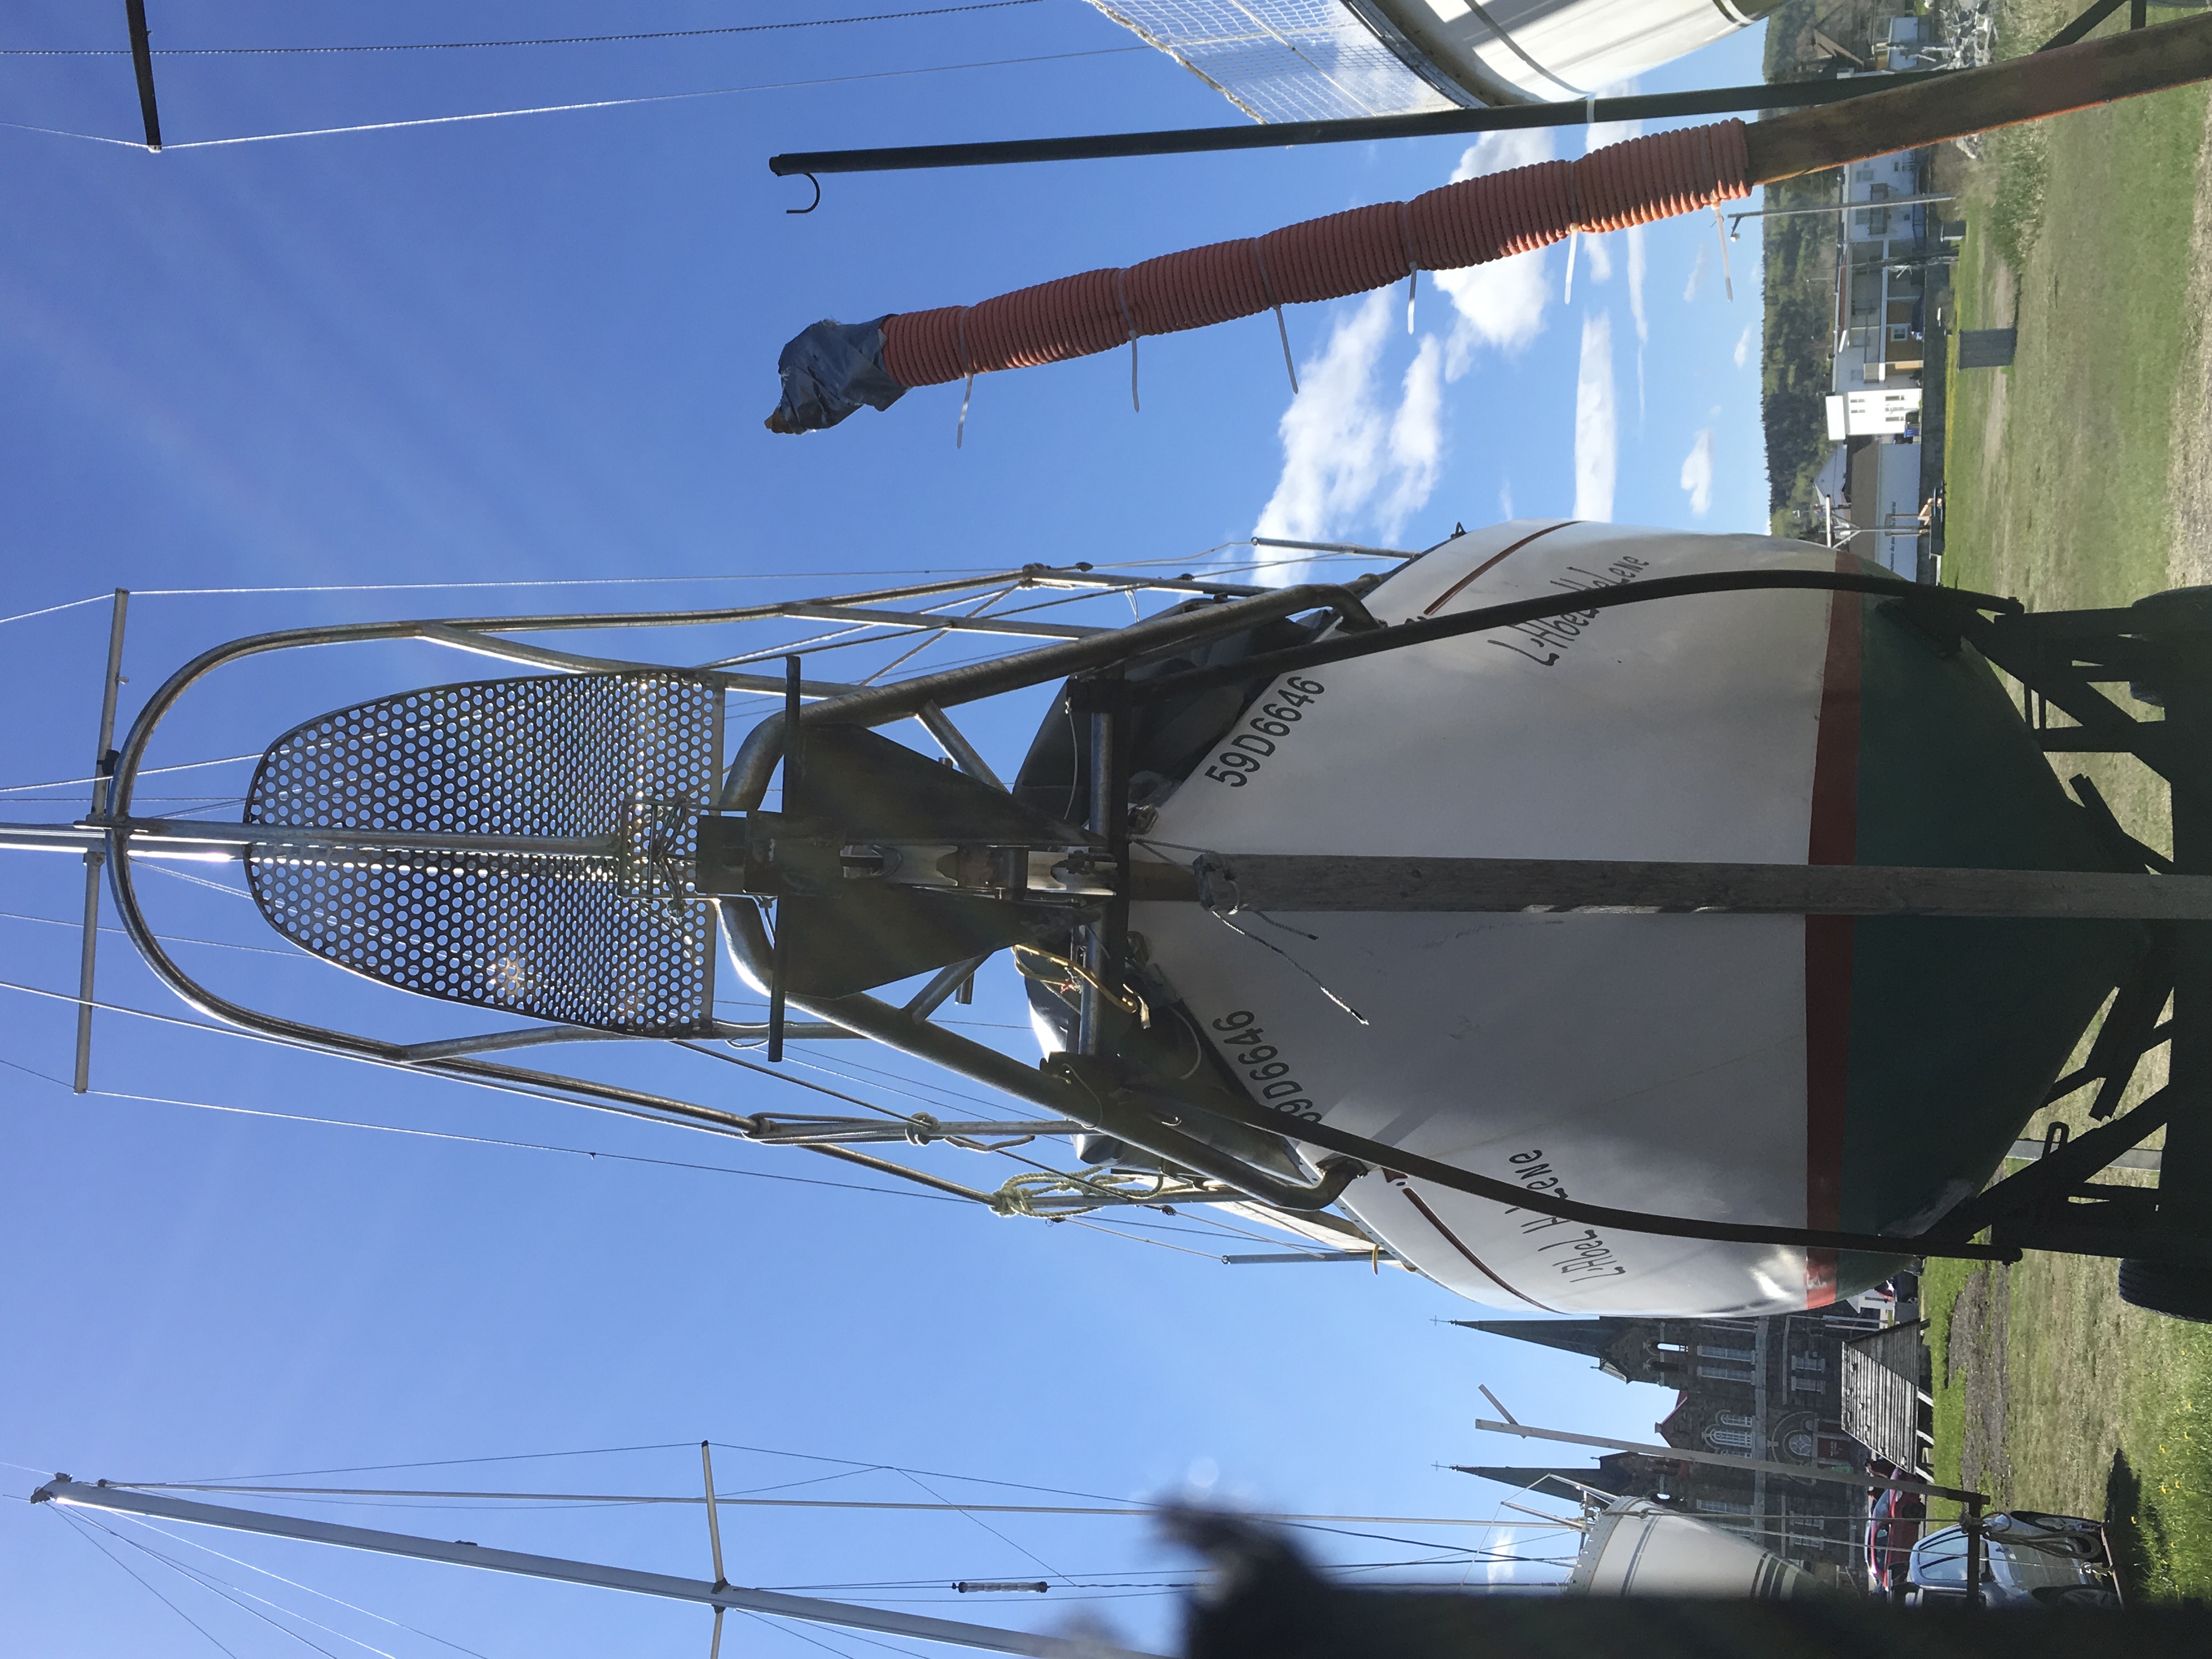 hullmaster 31 sailboat